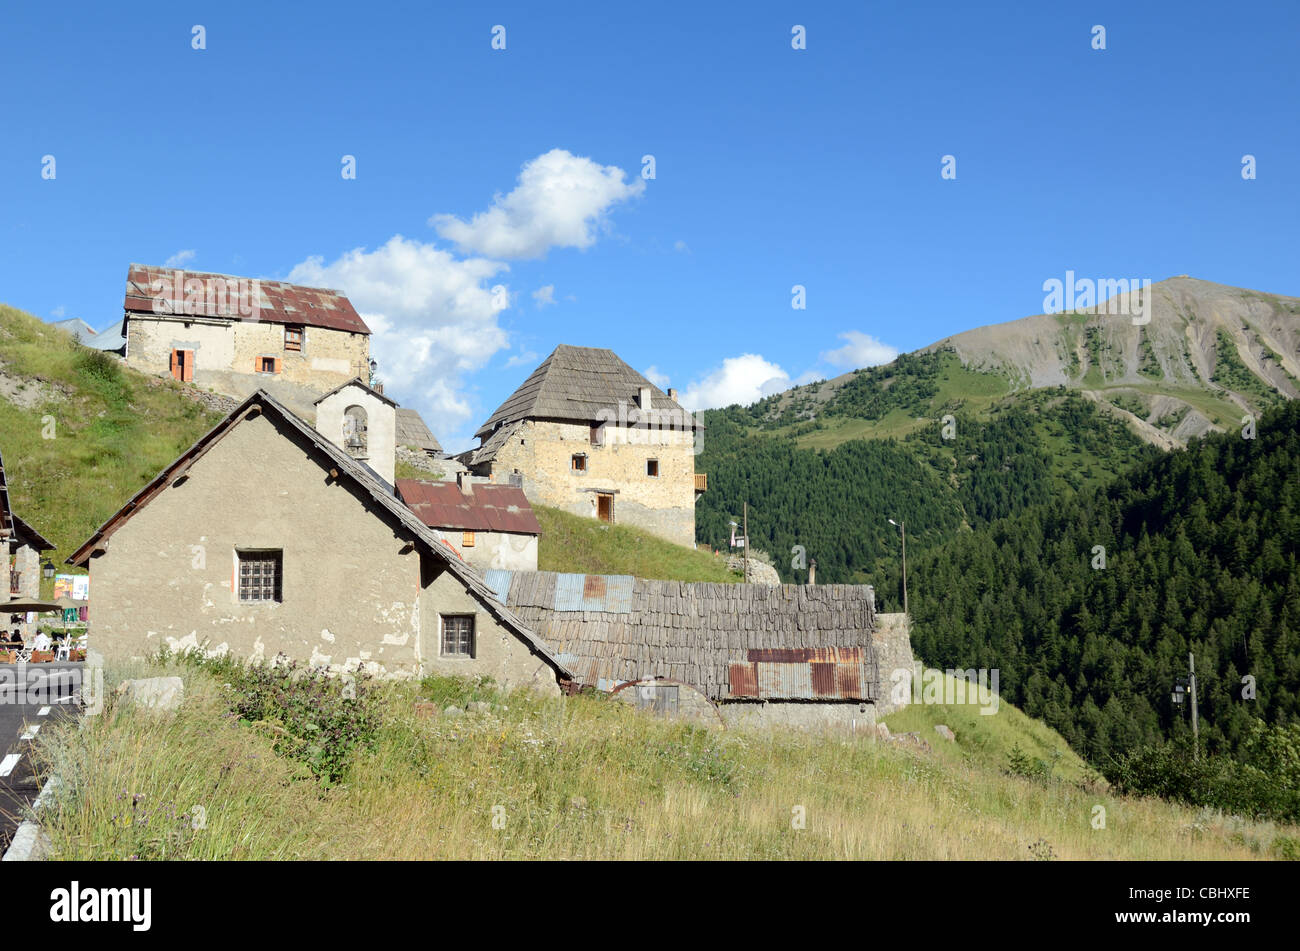 Bousieyas, villaggio alpino o frazione, all'estremità sud della Route de la Bonette, valle del Tinée, Alpes-Maritimes, Francia Foto Stock